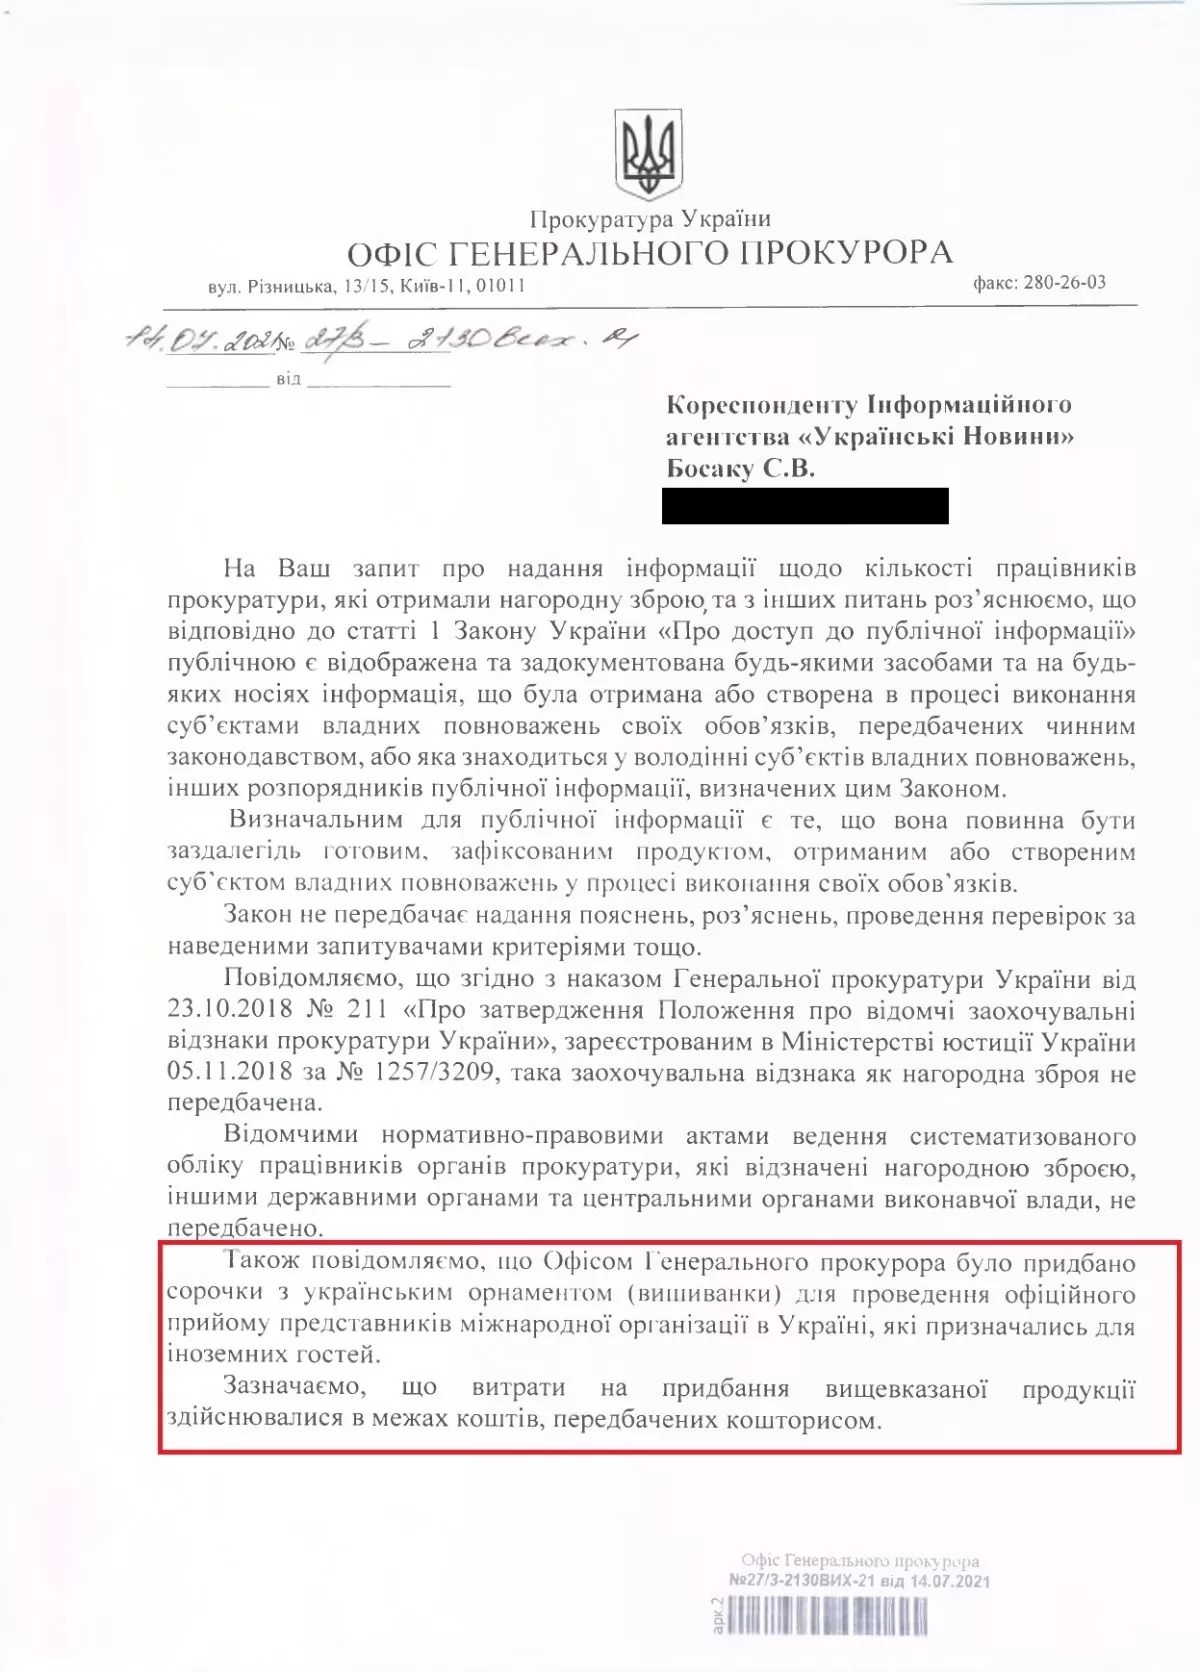 В Офисе генпрокурора объяснили покупку двух вышиванок за 3 тыс. грн - 2 - изображение